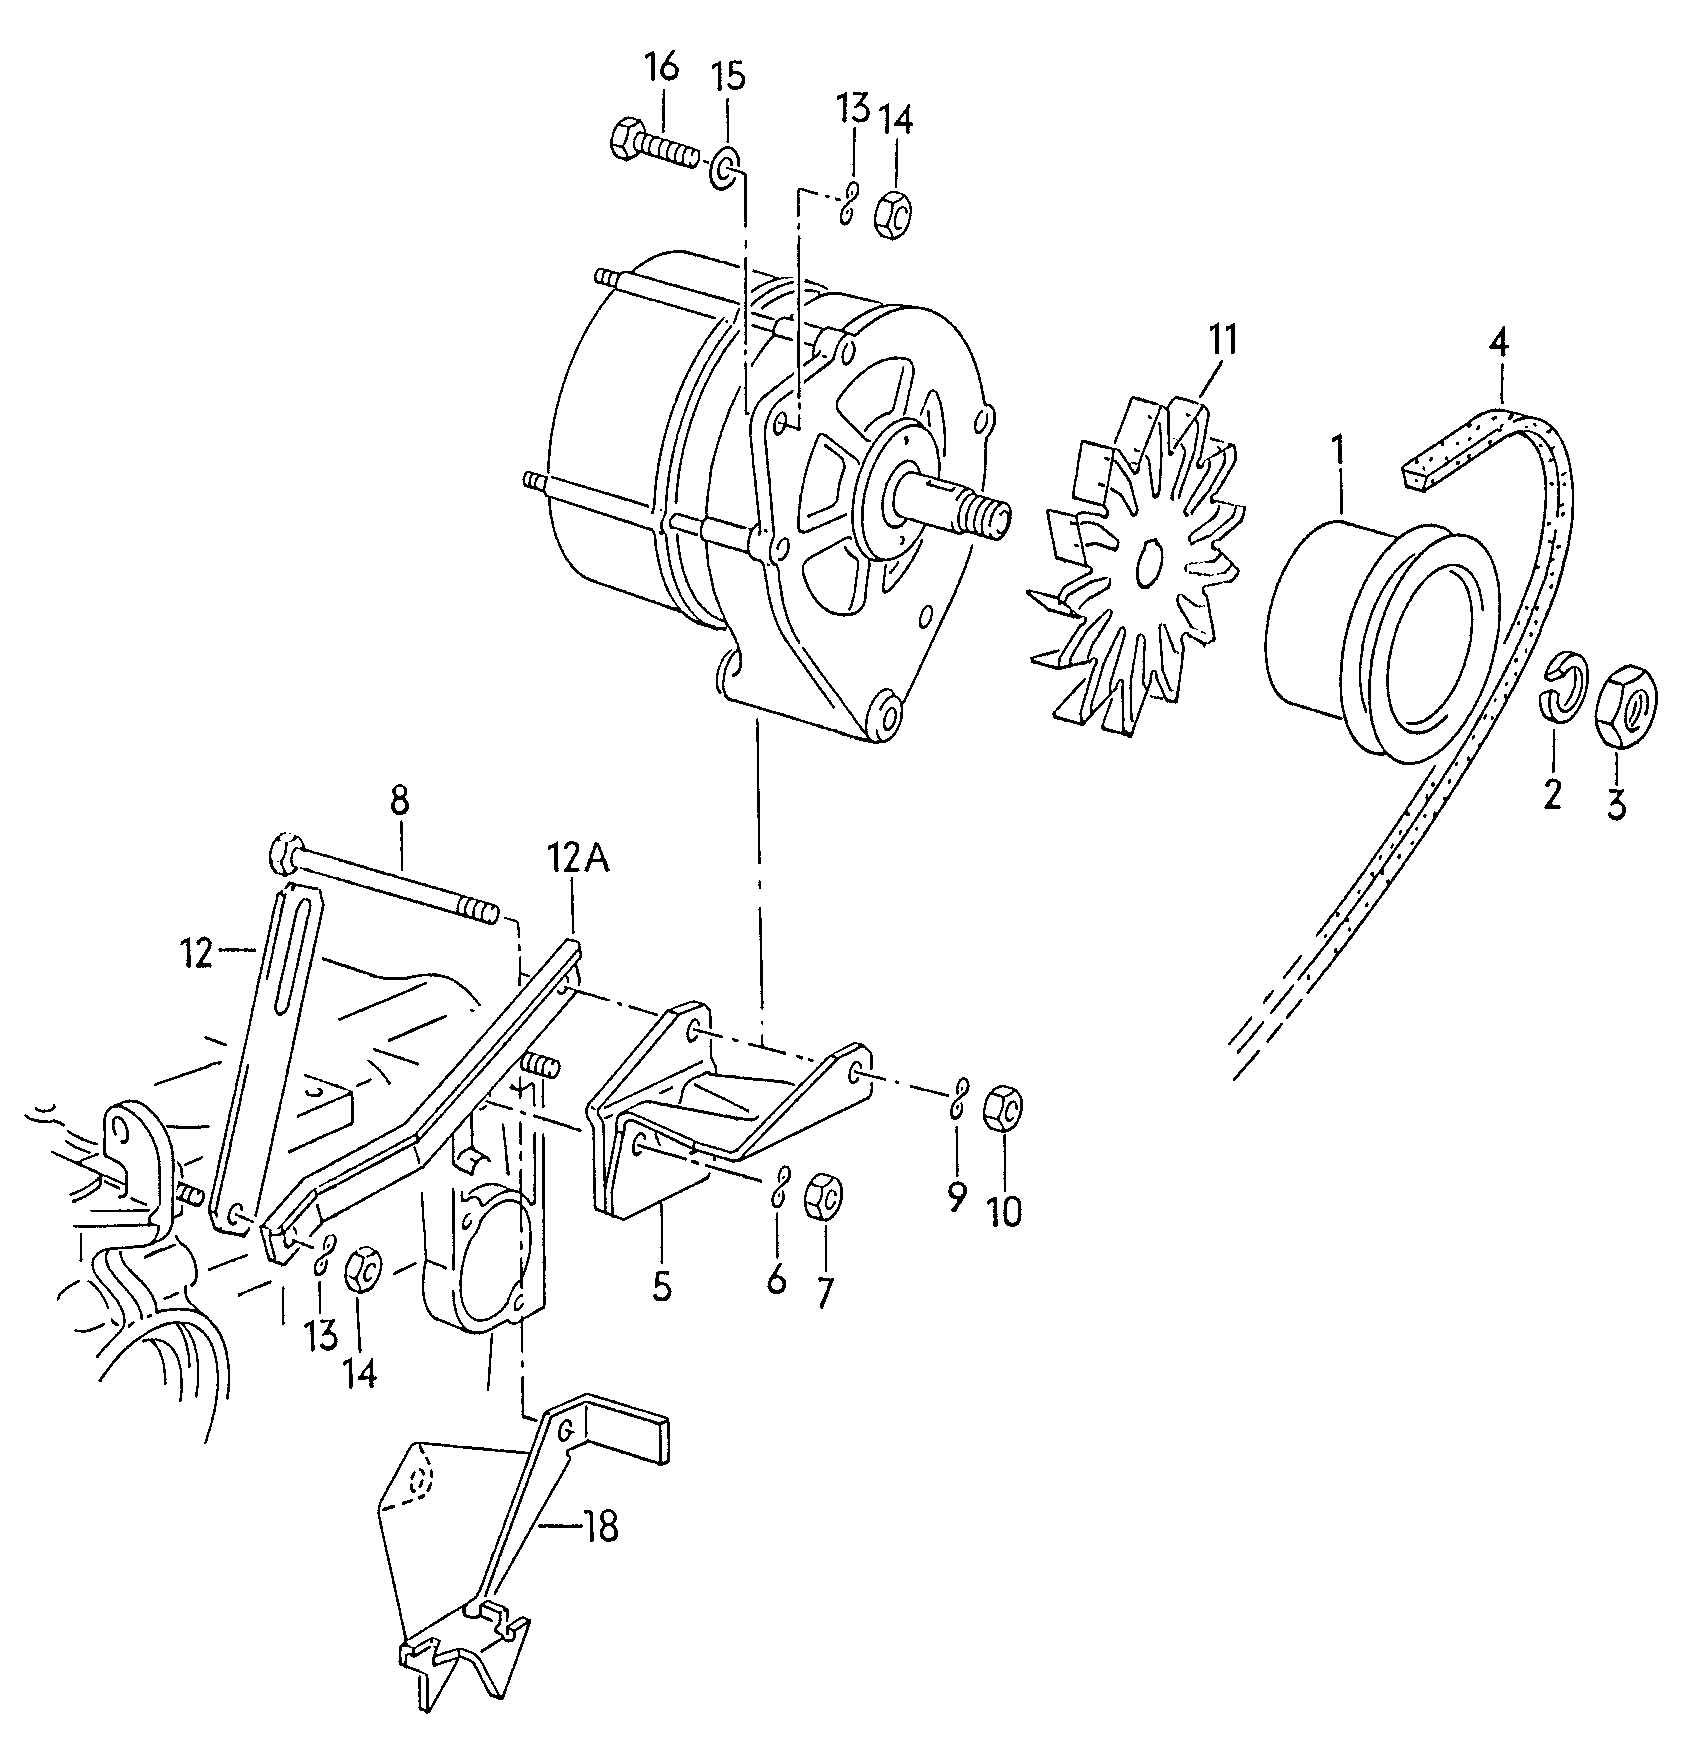 piezas fijacion p.
alternador - Typ 2/syncro(T2)  